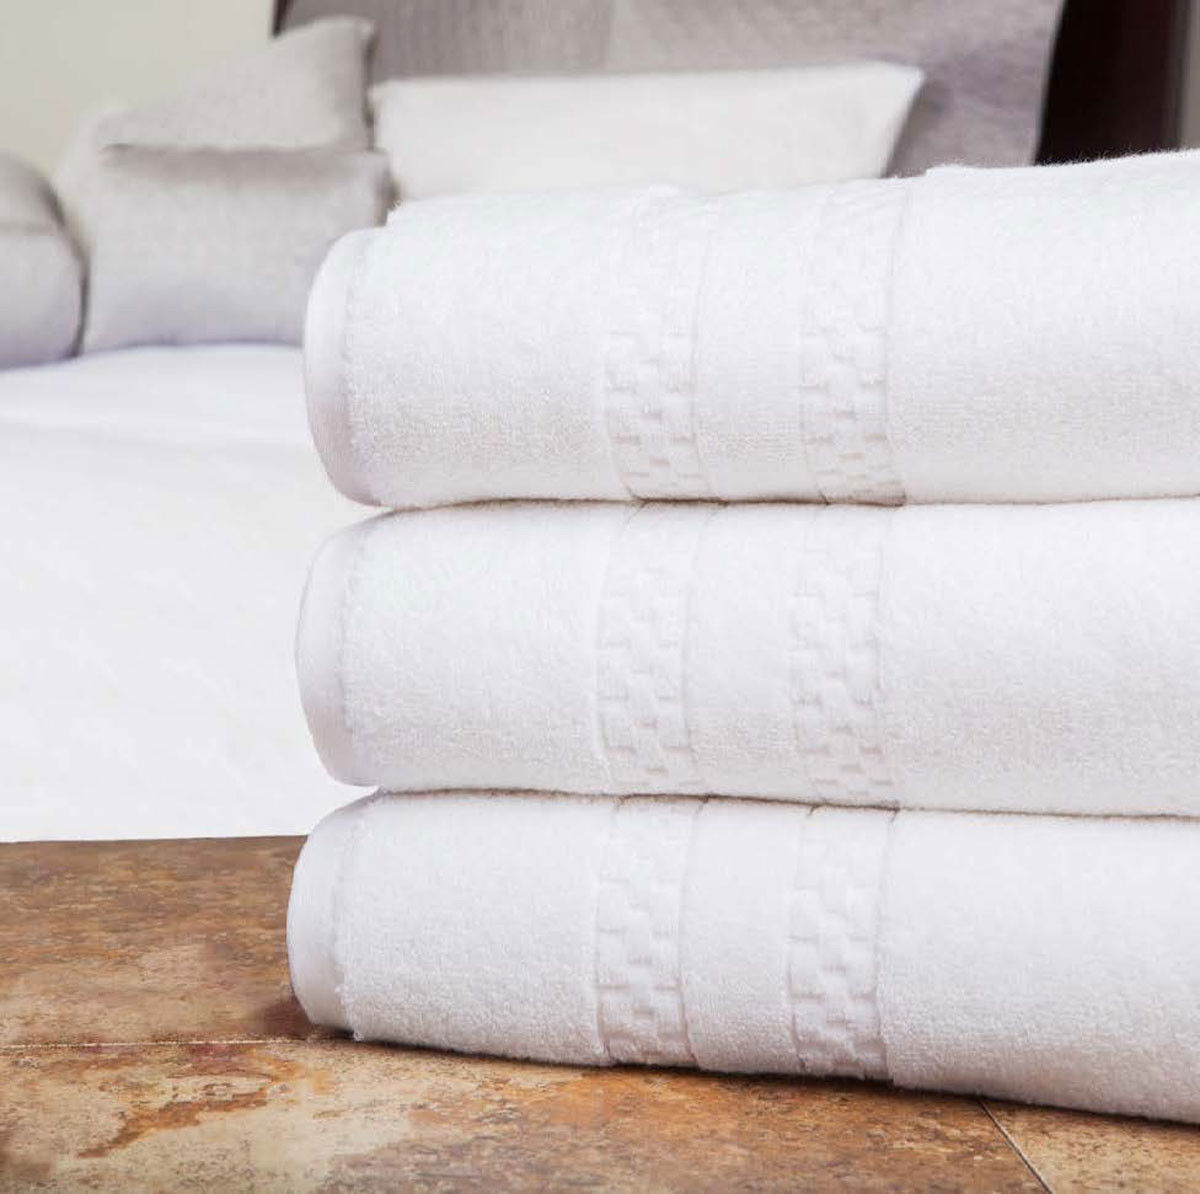 What sets the design of Villa di Sorrento towels apart?